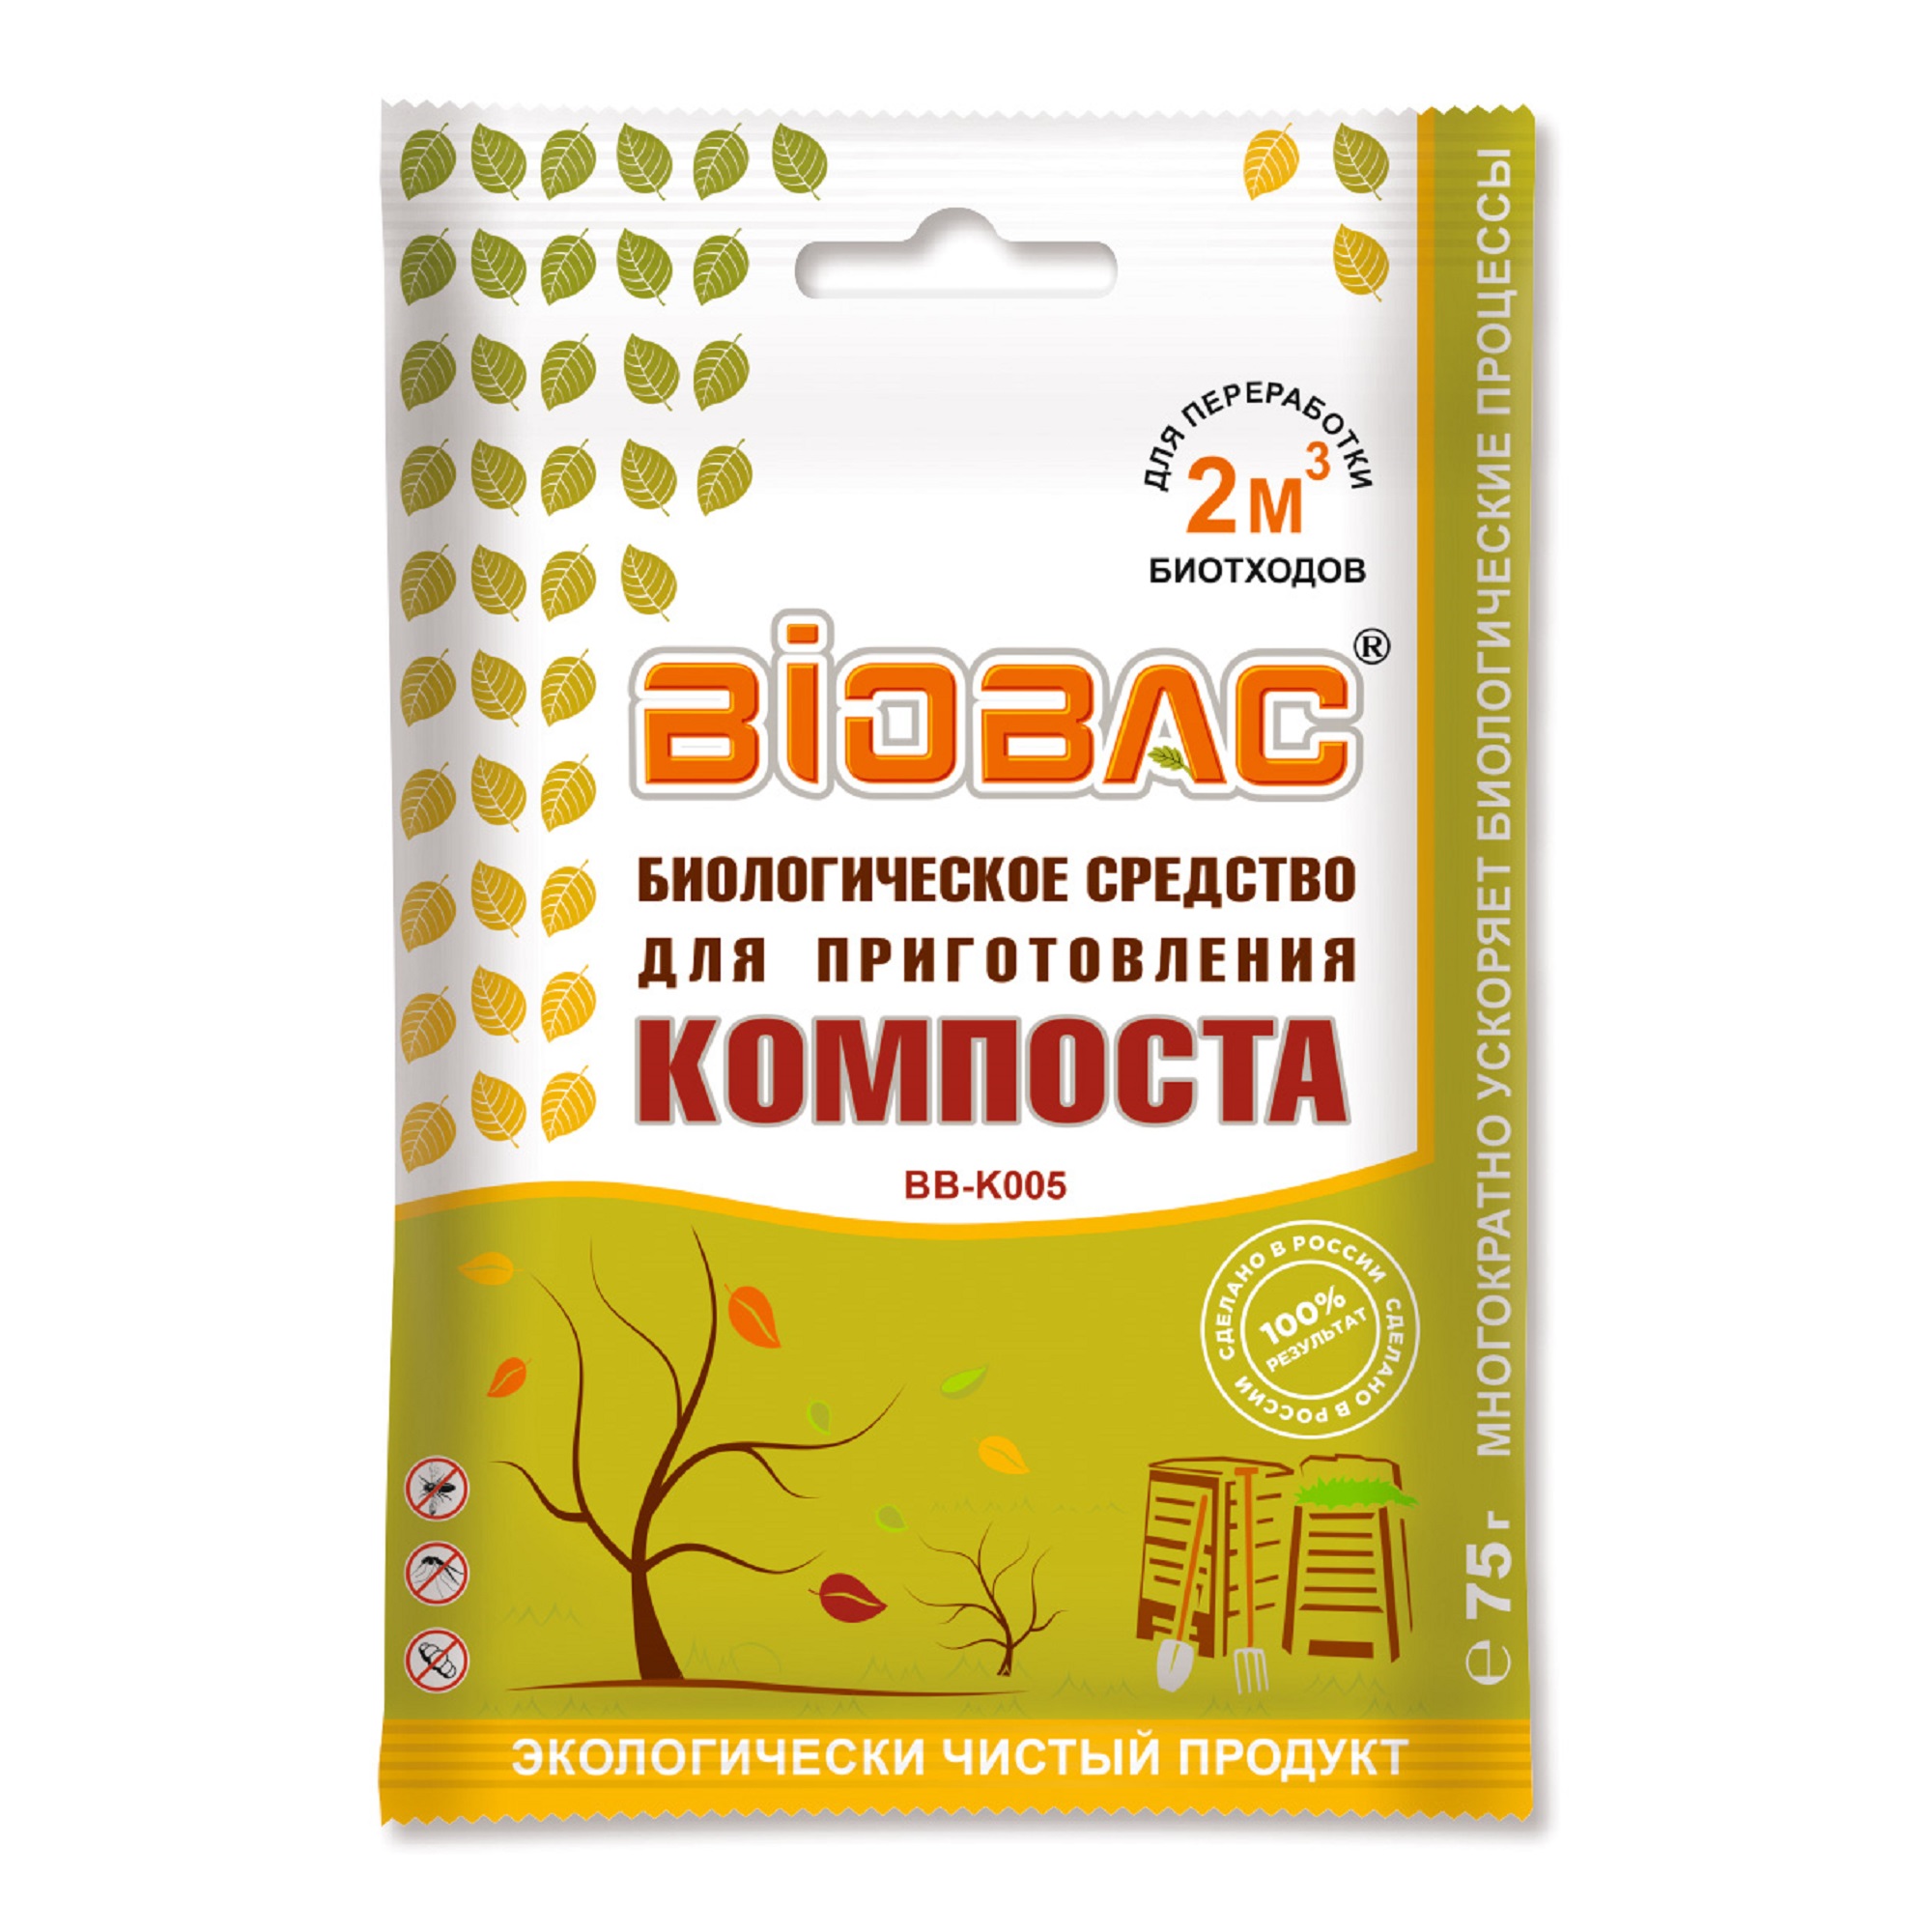 Средство для приготовления компоста BB-K005 биобак биологическое средство для приготовления компоста bb k005